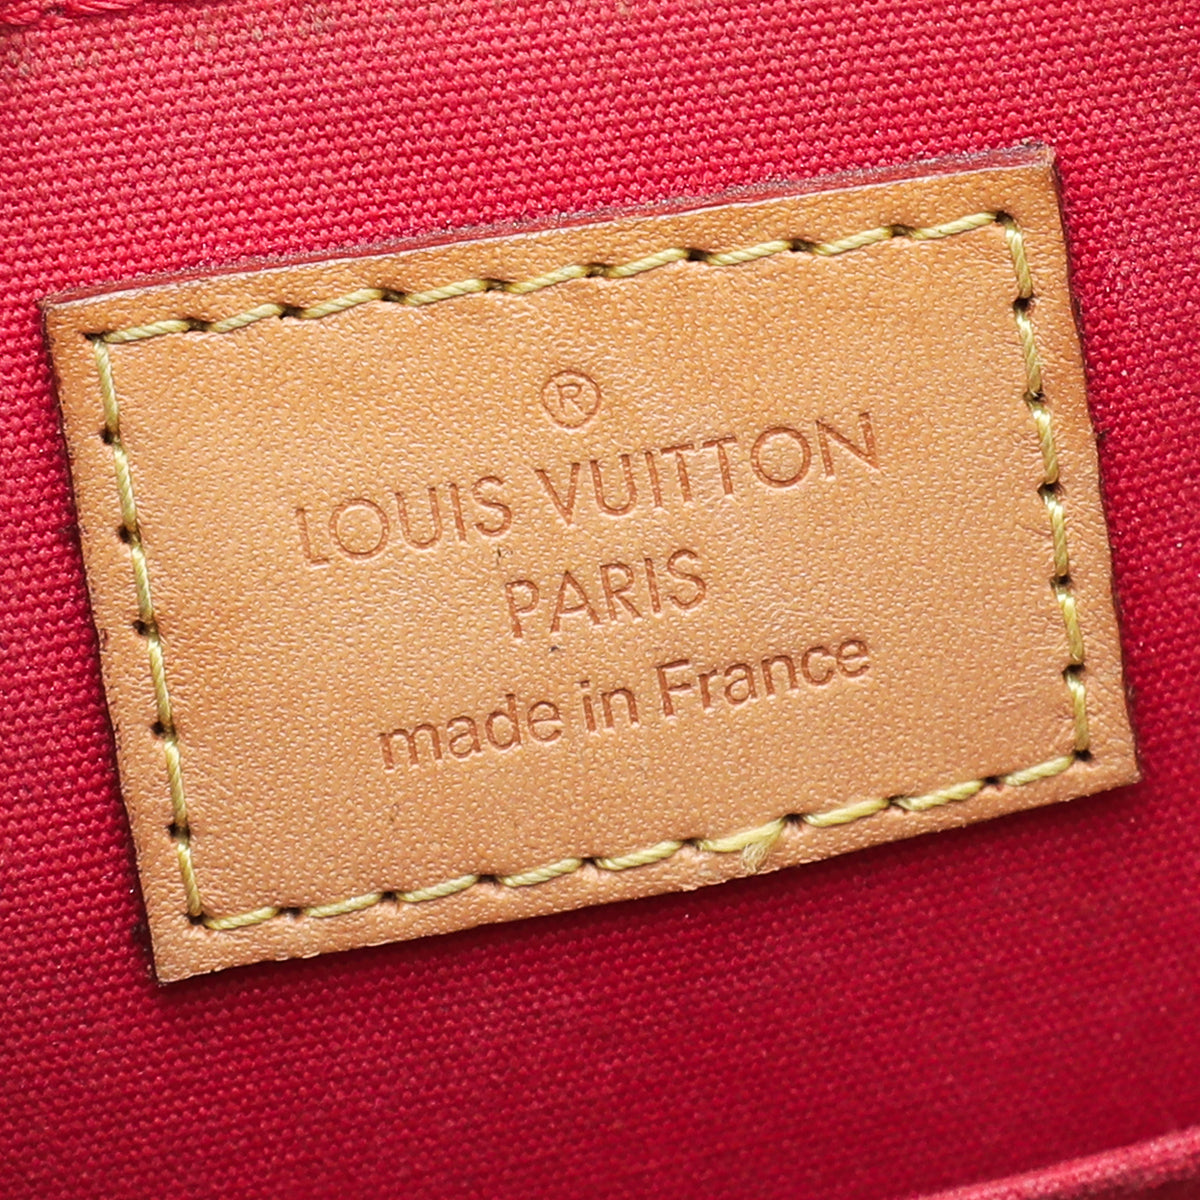 Louis Vuitton Cerise Monogram Vernis Alma BB Bag